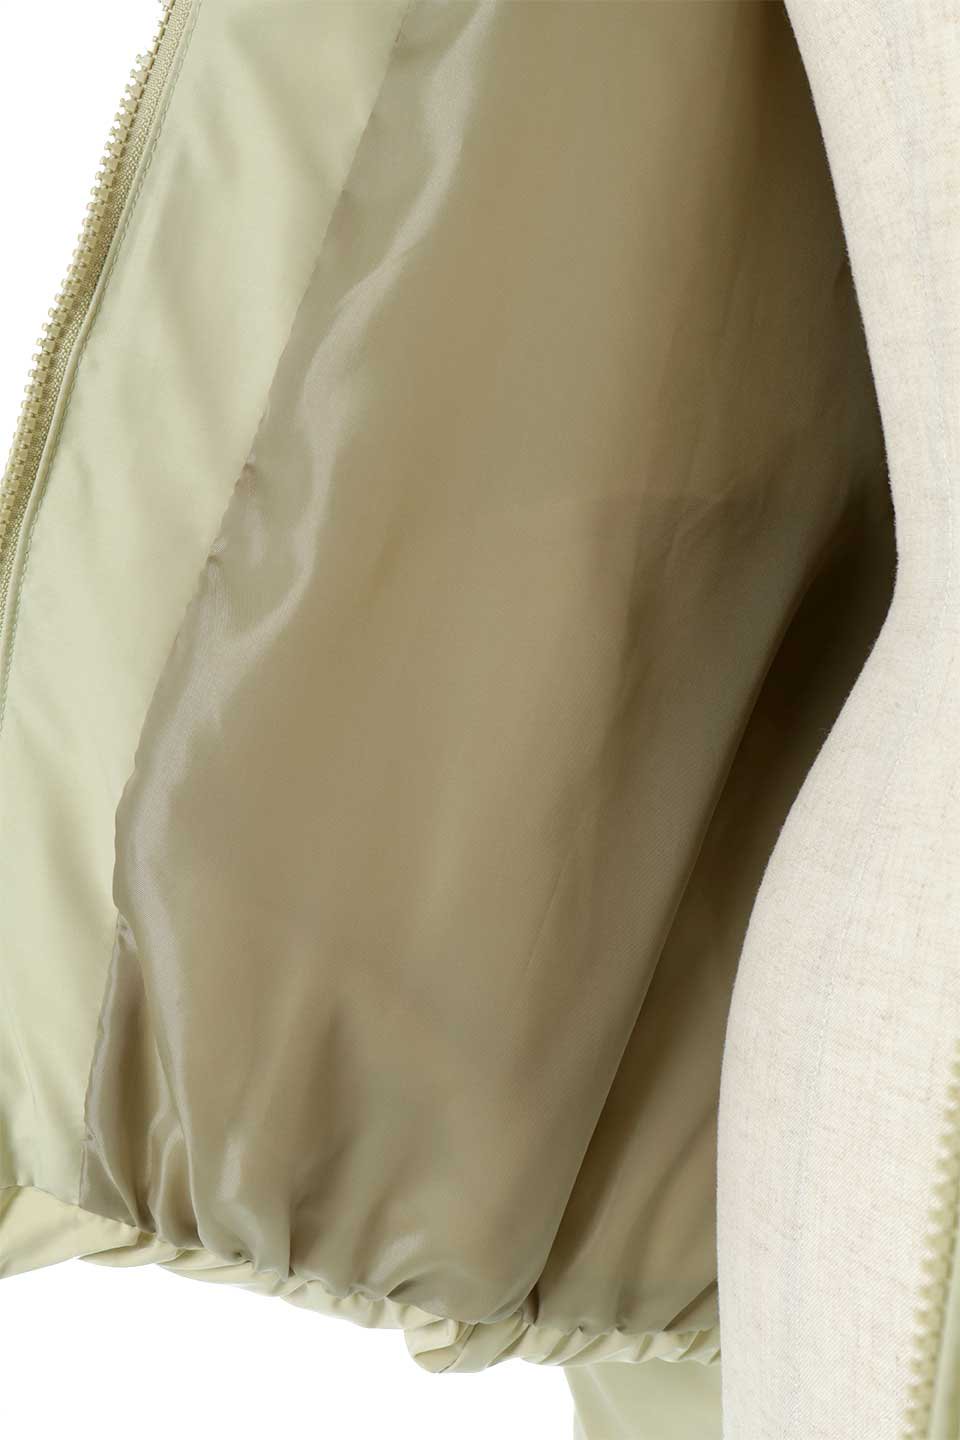 SORONAShortPufferJacketソロナ中綿・ショートジャケット大人カジュアルに最適な海外ファッションのothers（その他インポートアイテム）のアウターやジャケット。ボリューミーだけど着ぶくれしない。デュポン社の新素材を使用した中綿ジャケット。/main-24